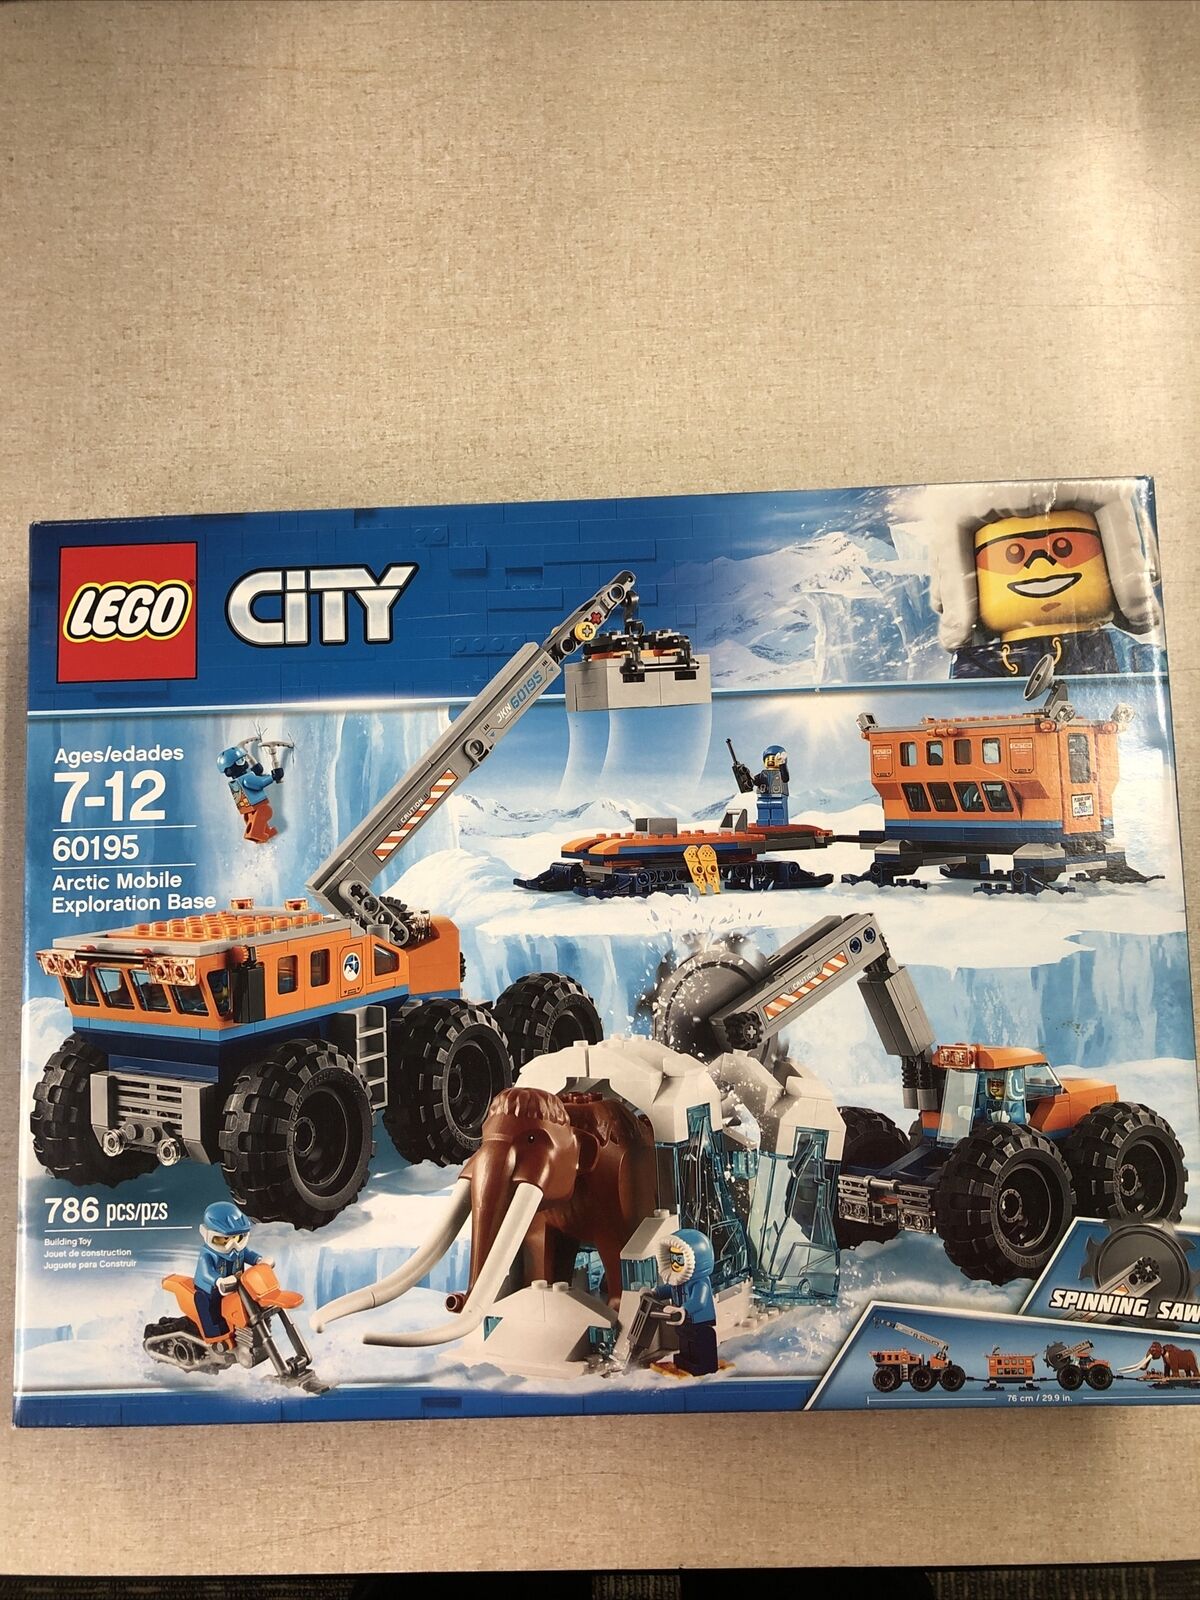 Lego City Arctic Mobile Exploration Base - New & Sealed 673419280822 |